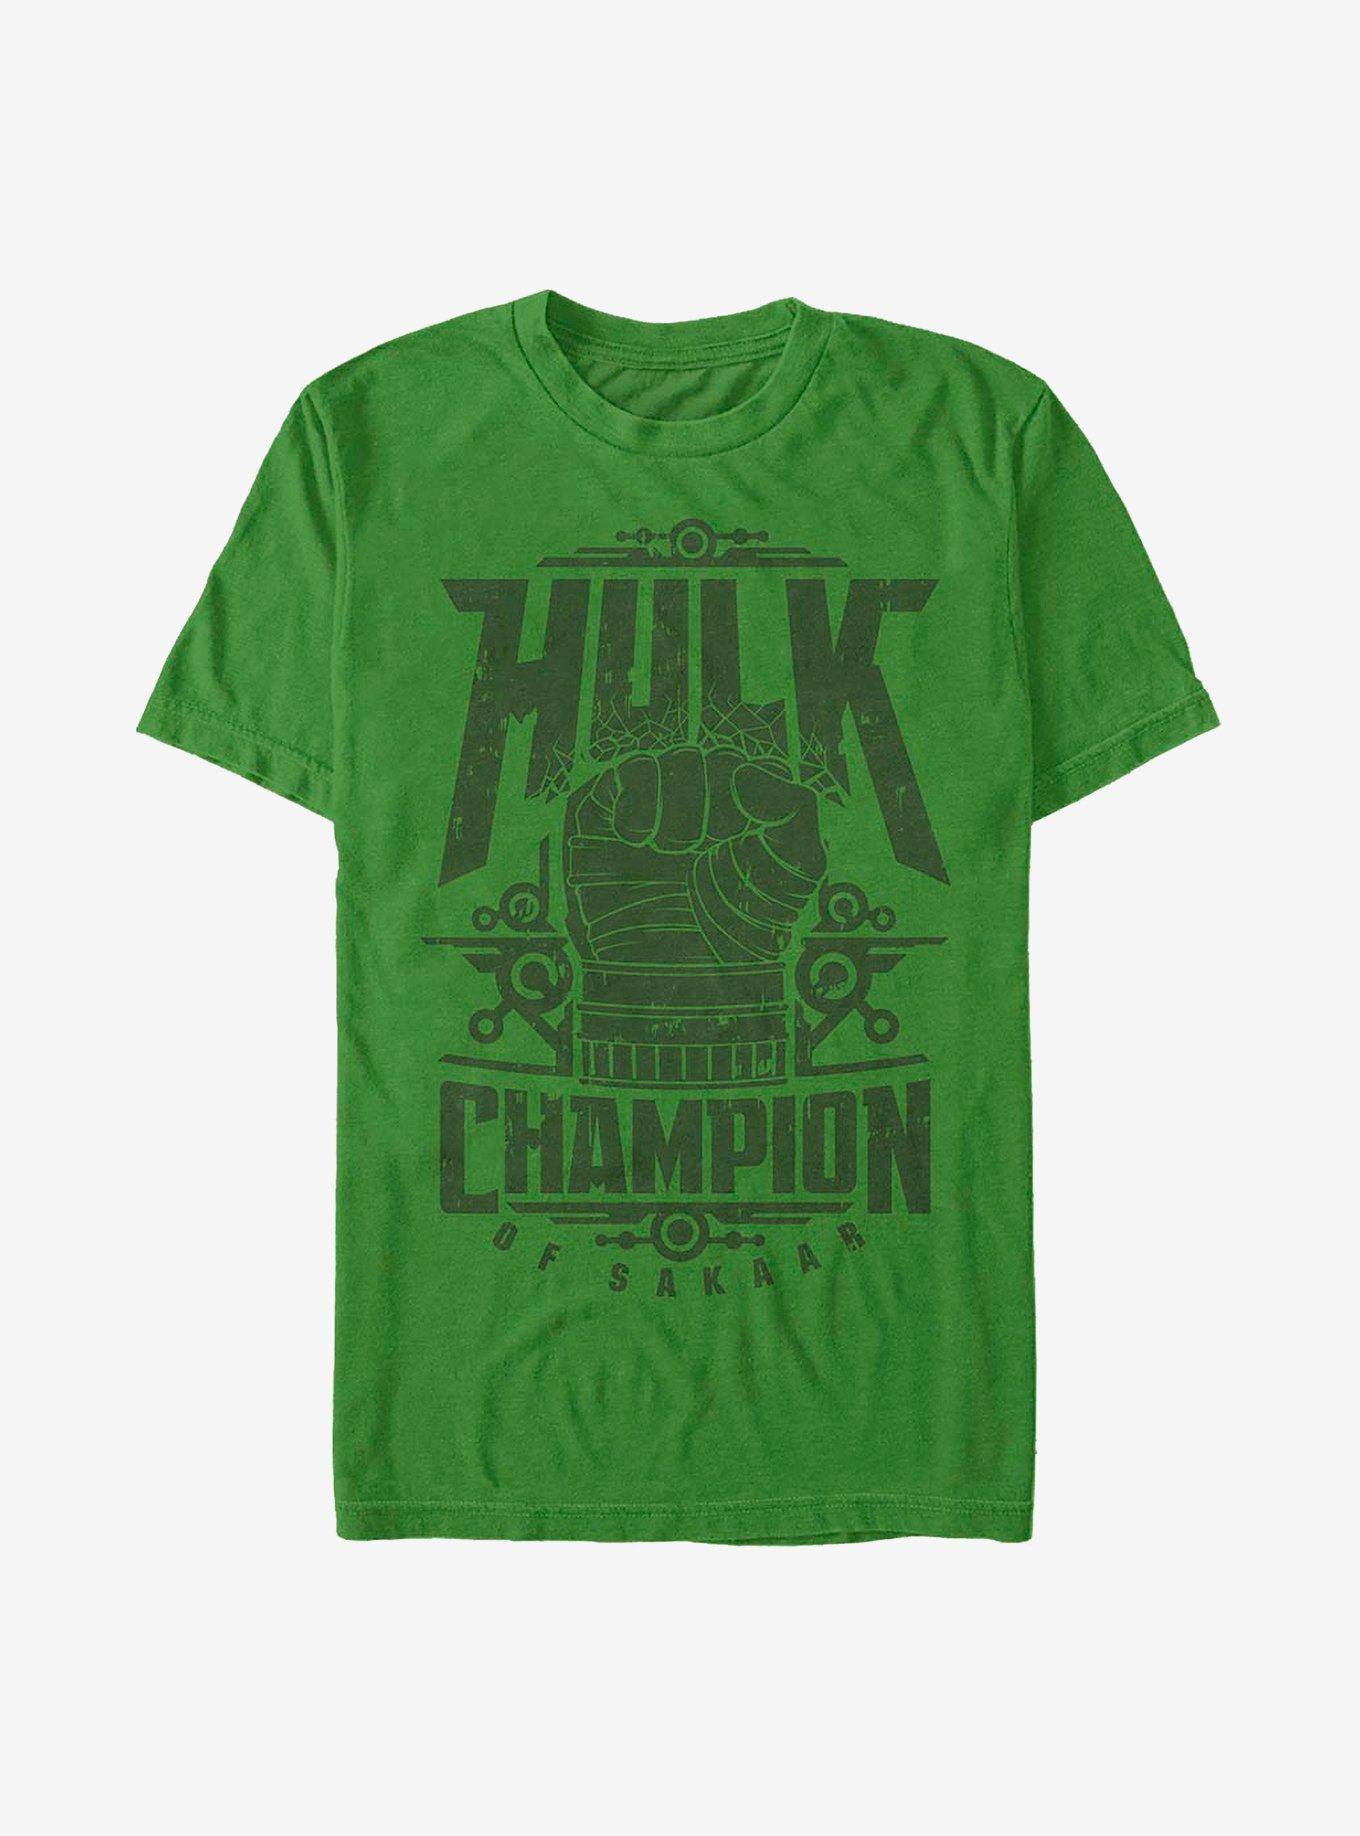 Marvel Hulk Champ Hulk T-Shirt, KELLY, hi-res